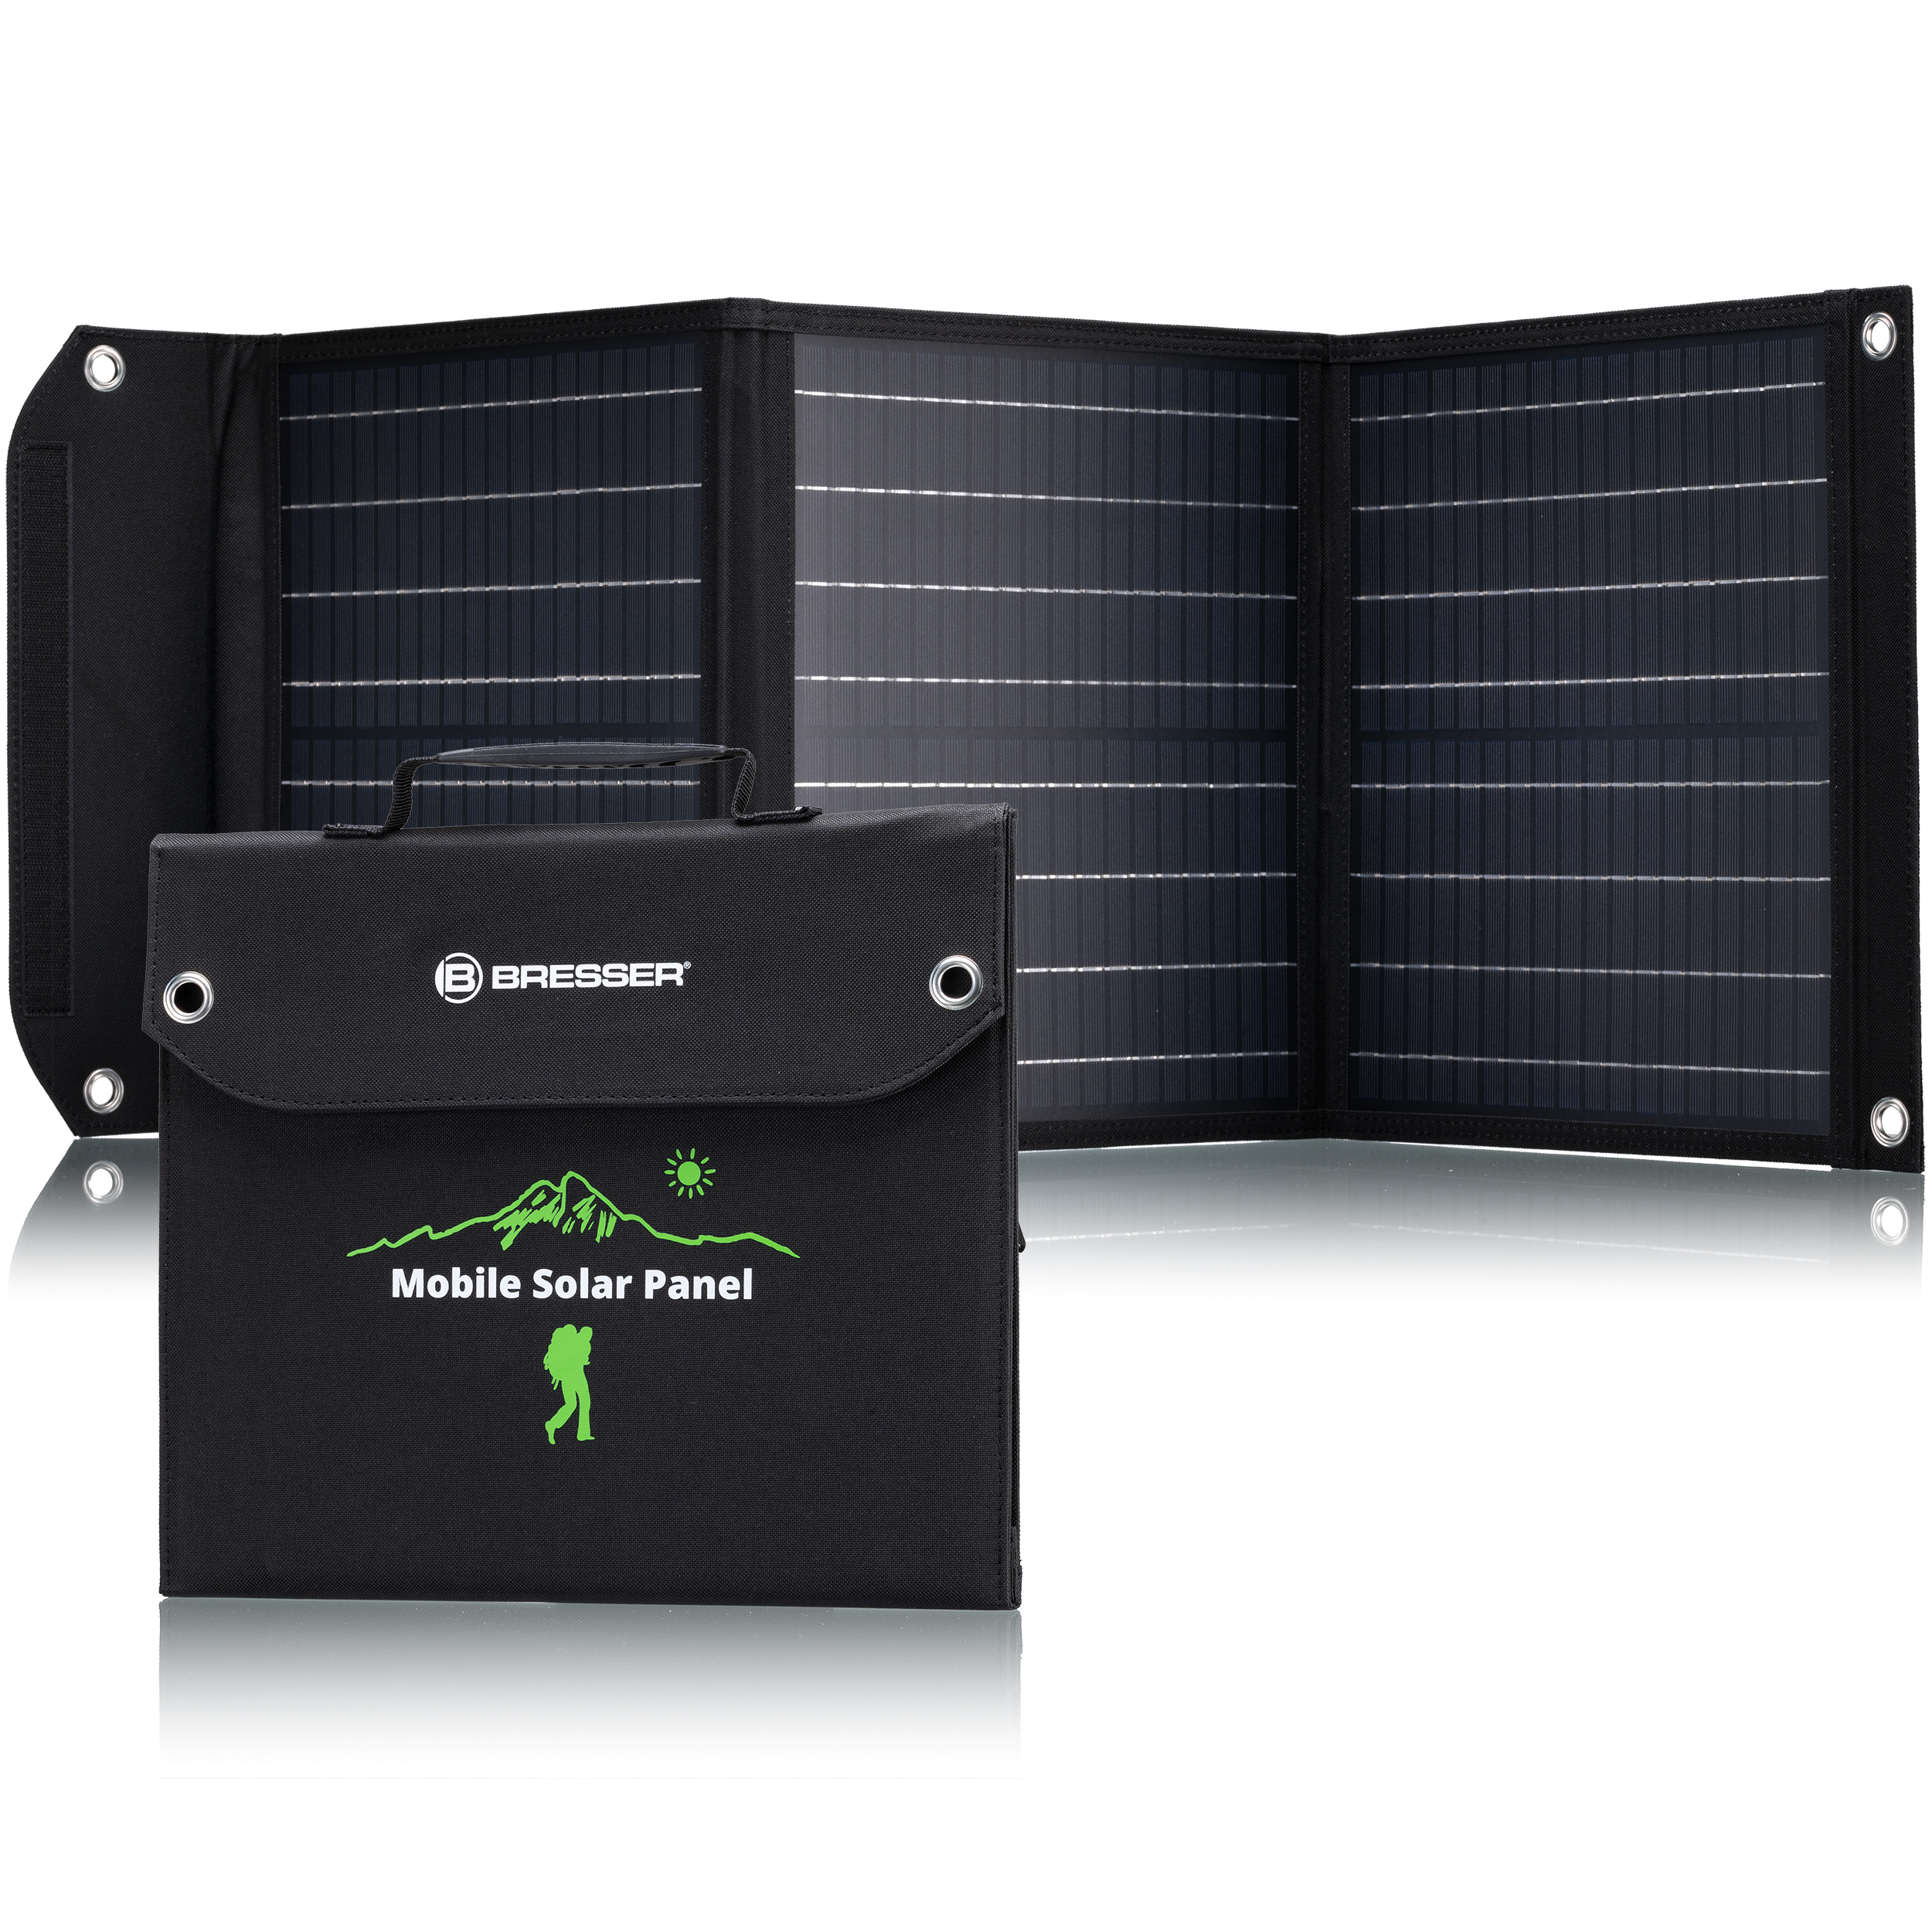 Відгуки портативна сонячна батарея Bresser Mobile Solar Charger 40 Watt USB DC (3810040) в Україні